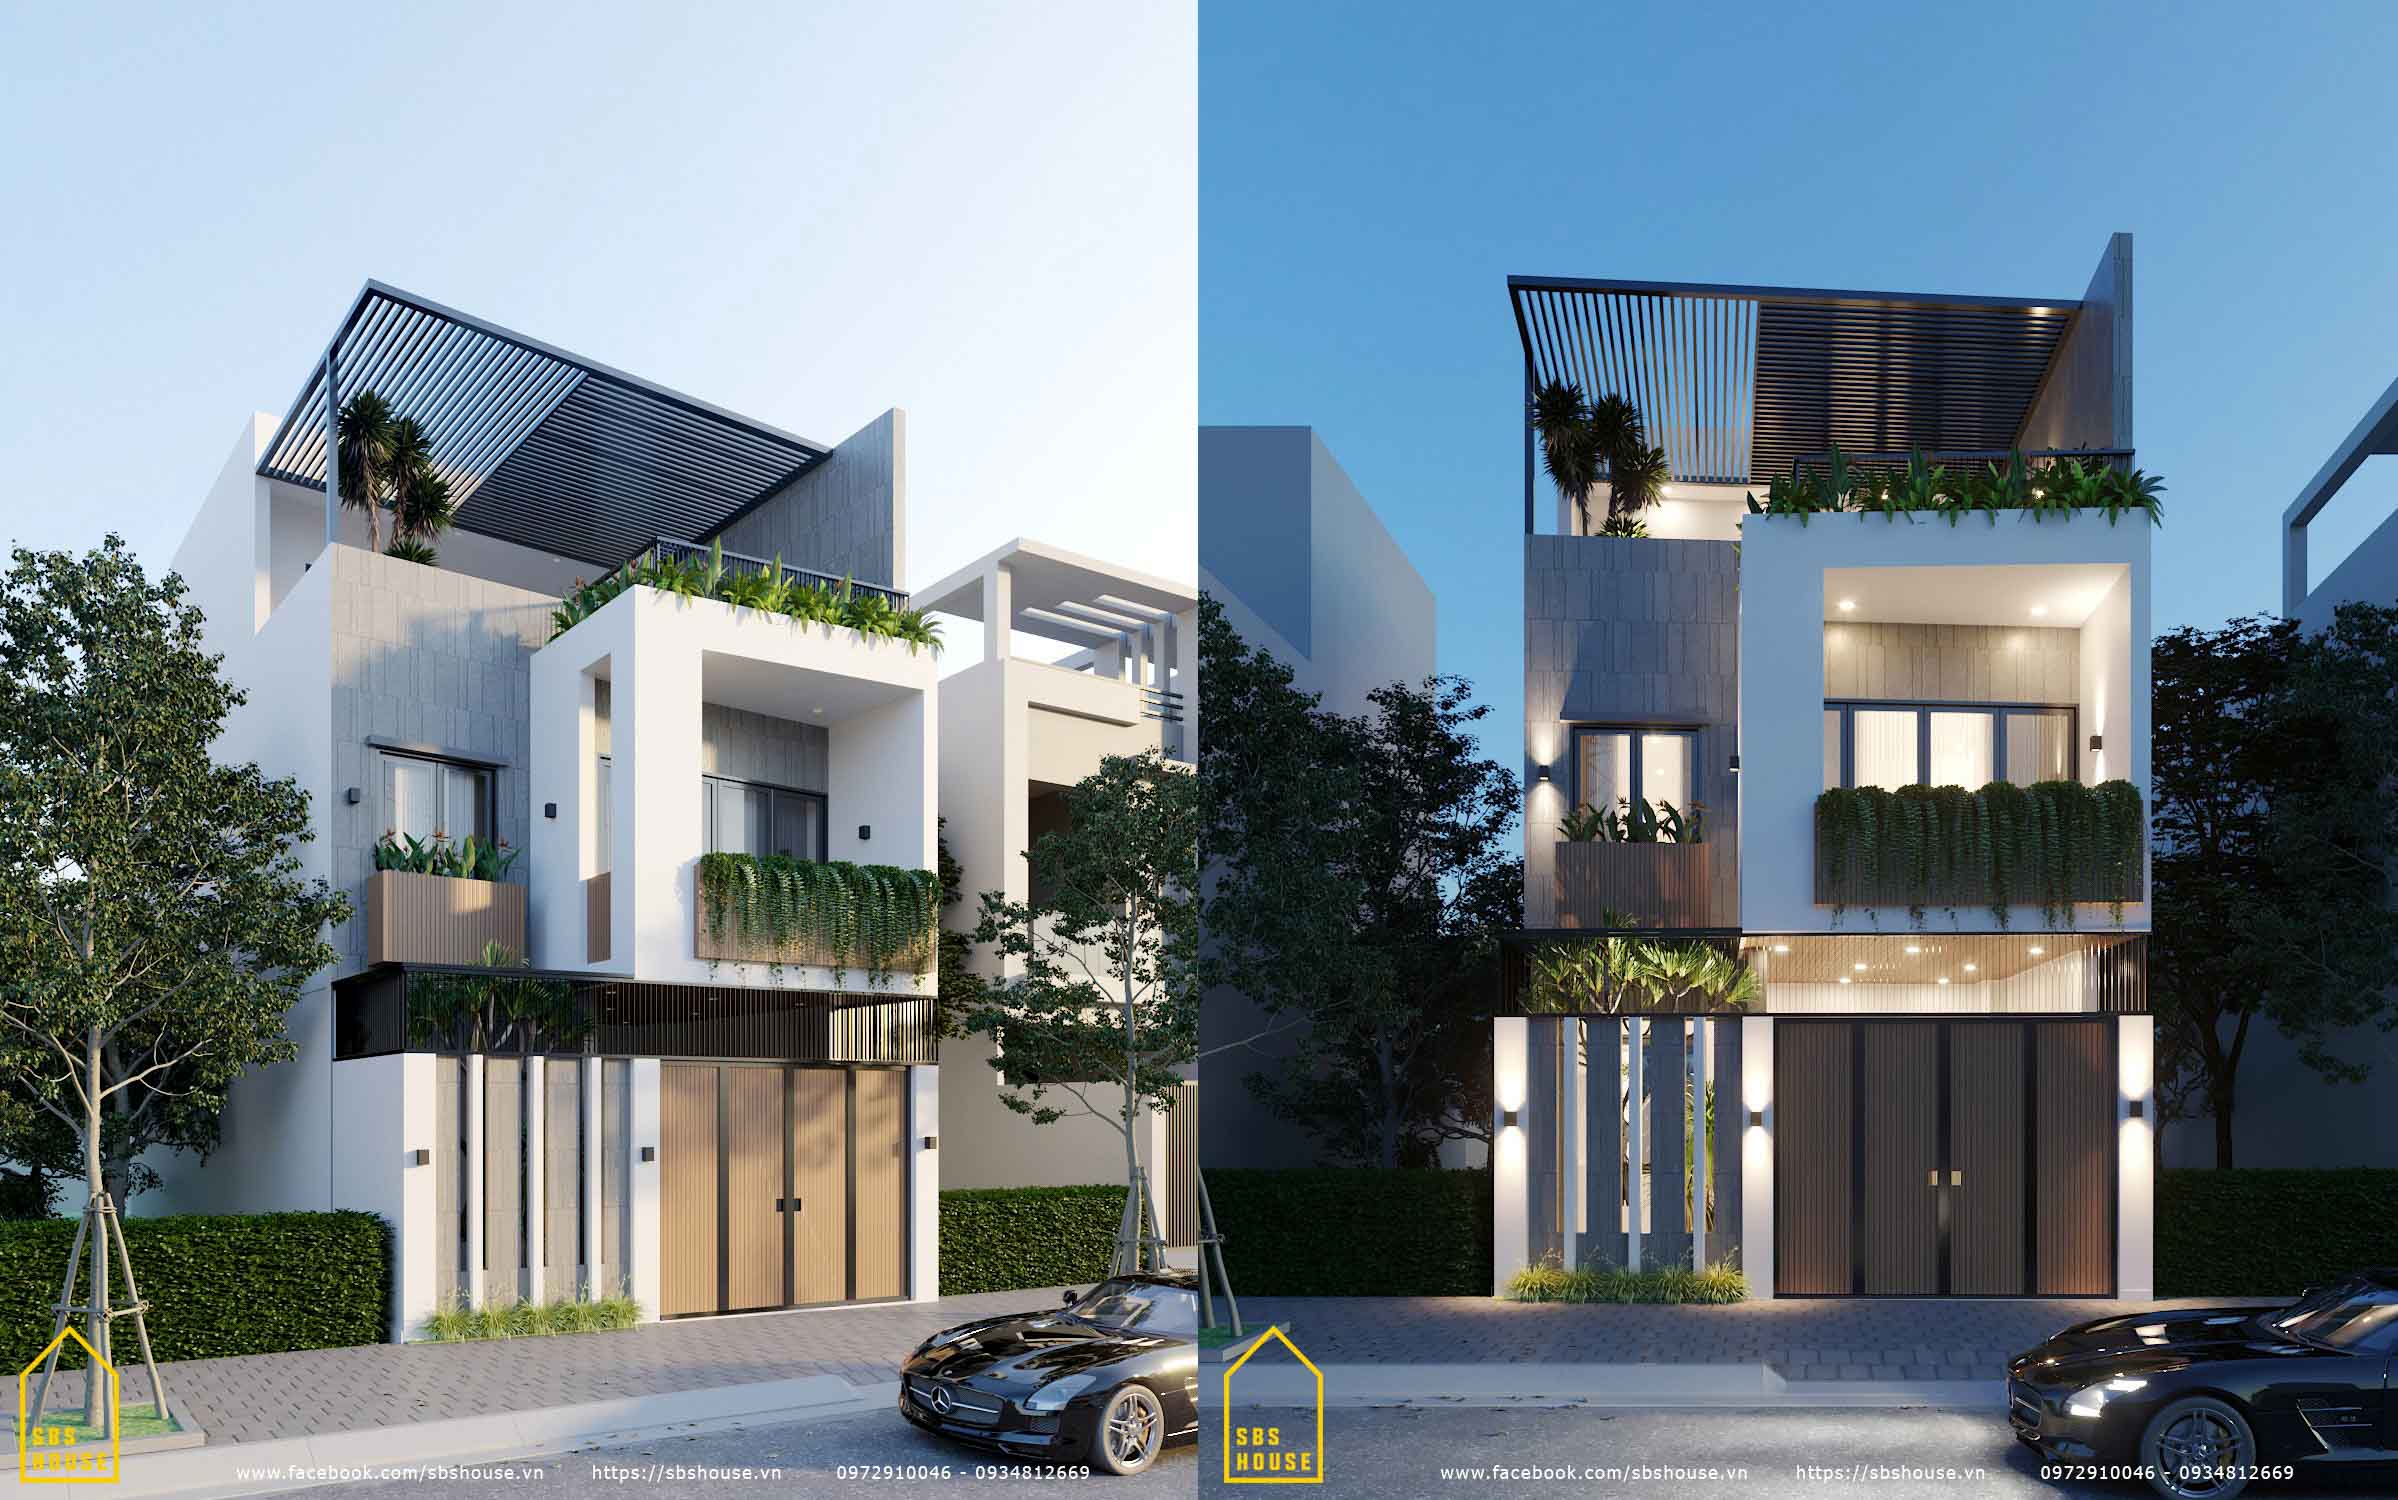 Luan's House mẫu nhà ống 3 tầng đẹp 2021